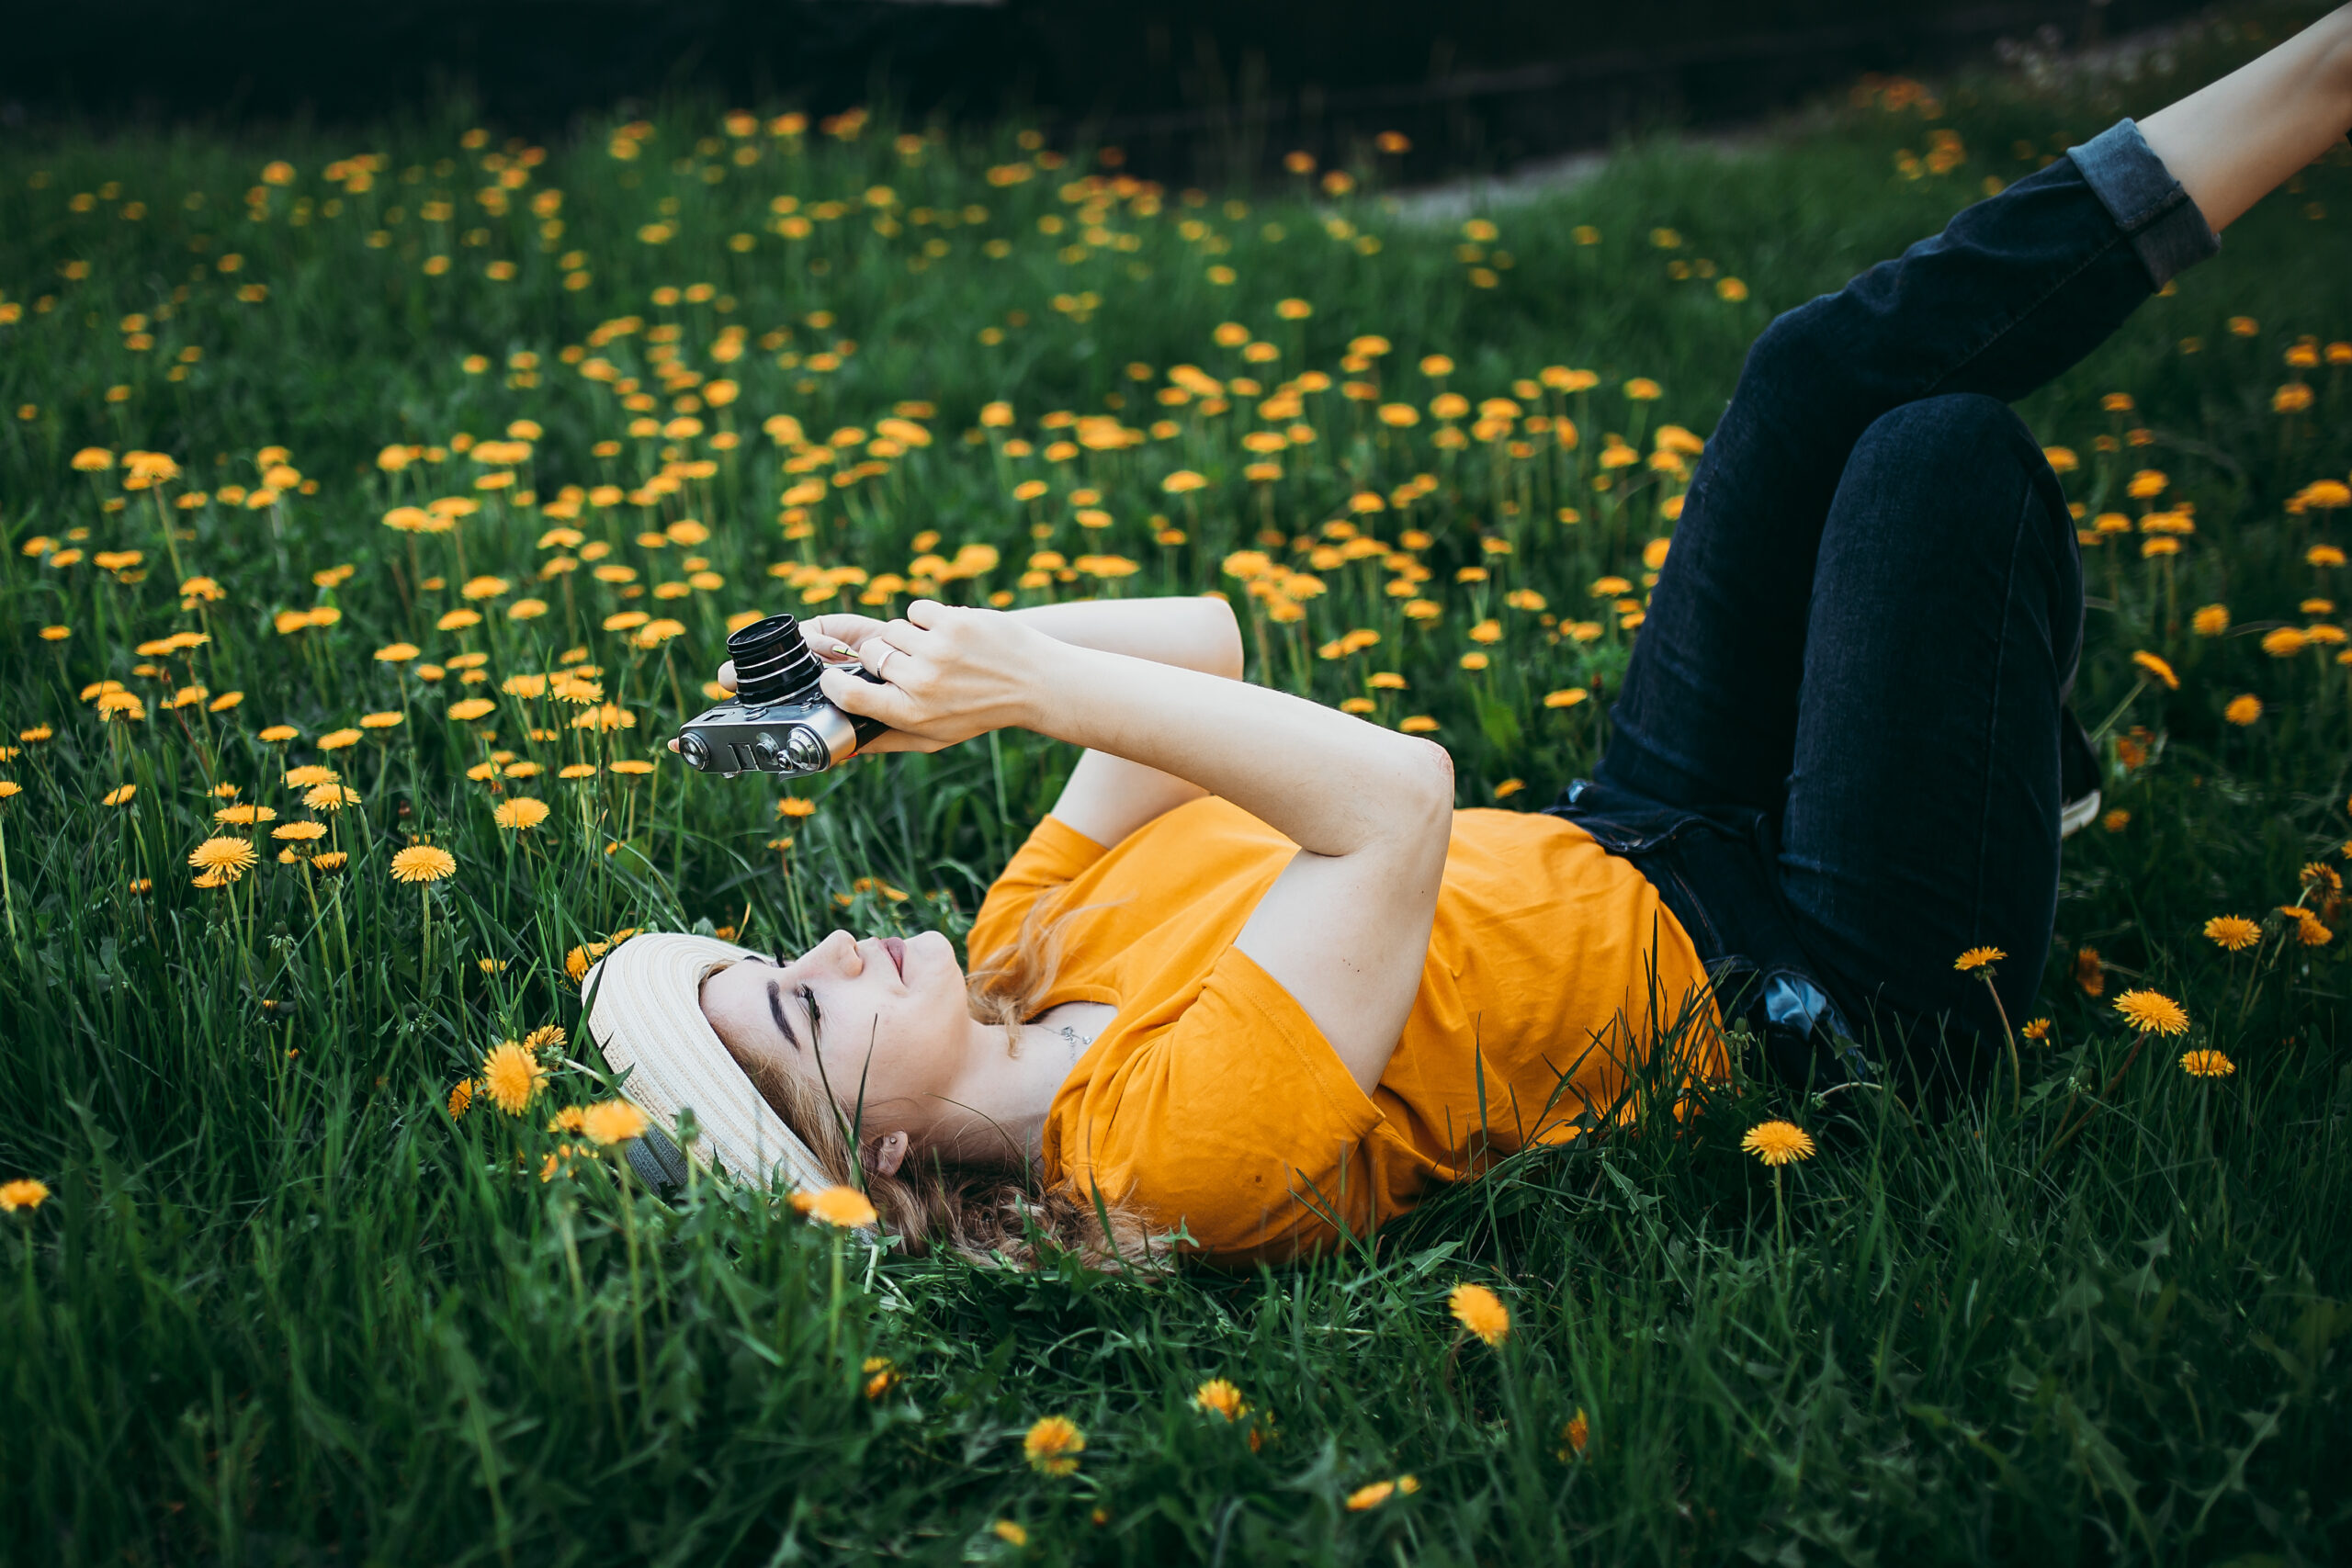 młoda leżąca kobieta w trawie. Trzyma w rękach aparat fotograficzny, skierowany ku niebu